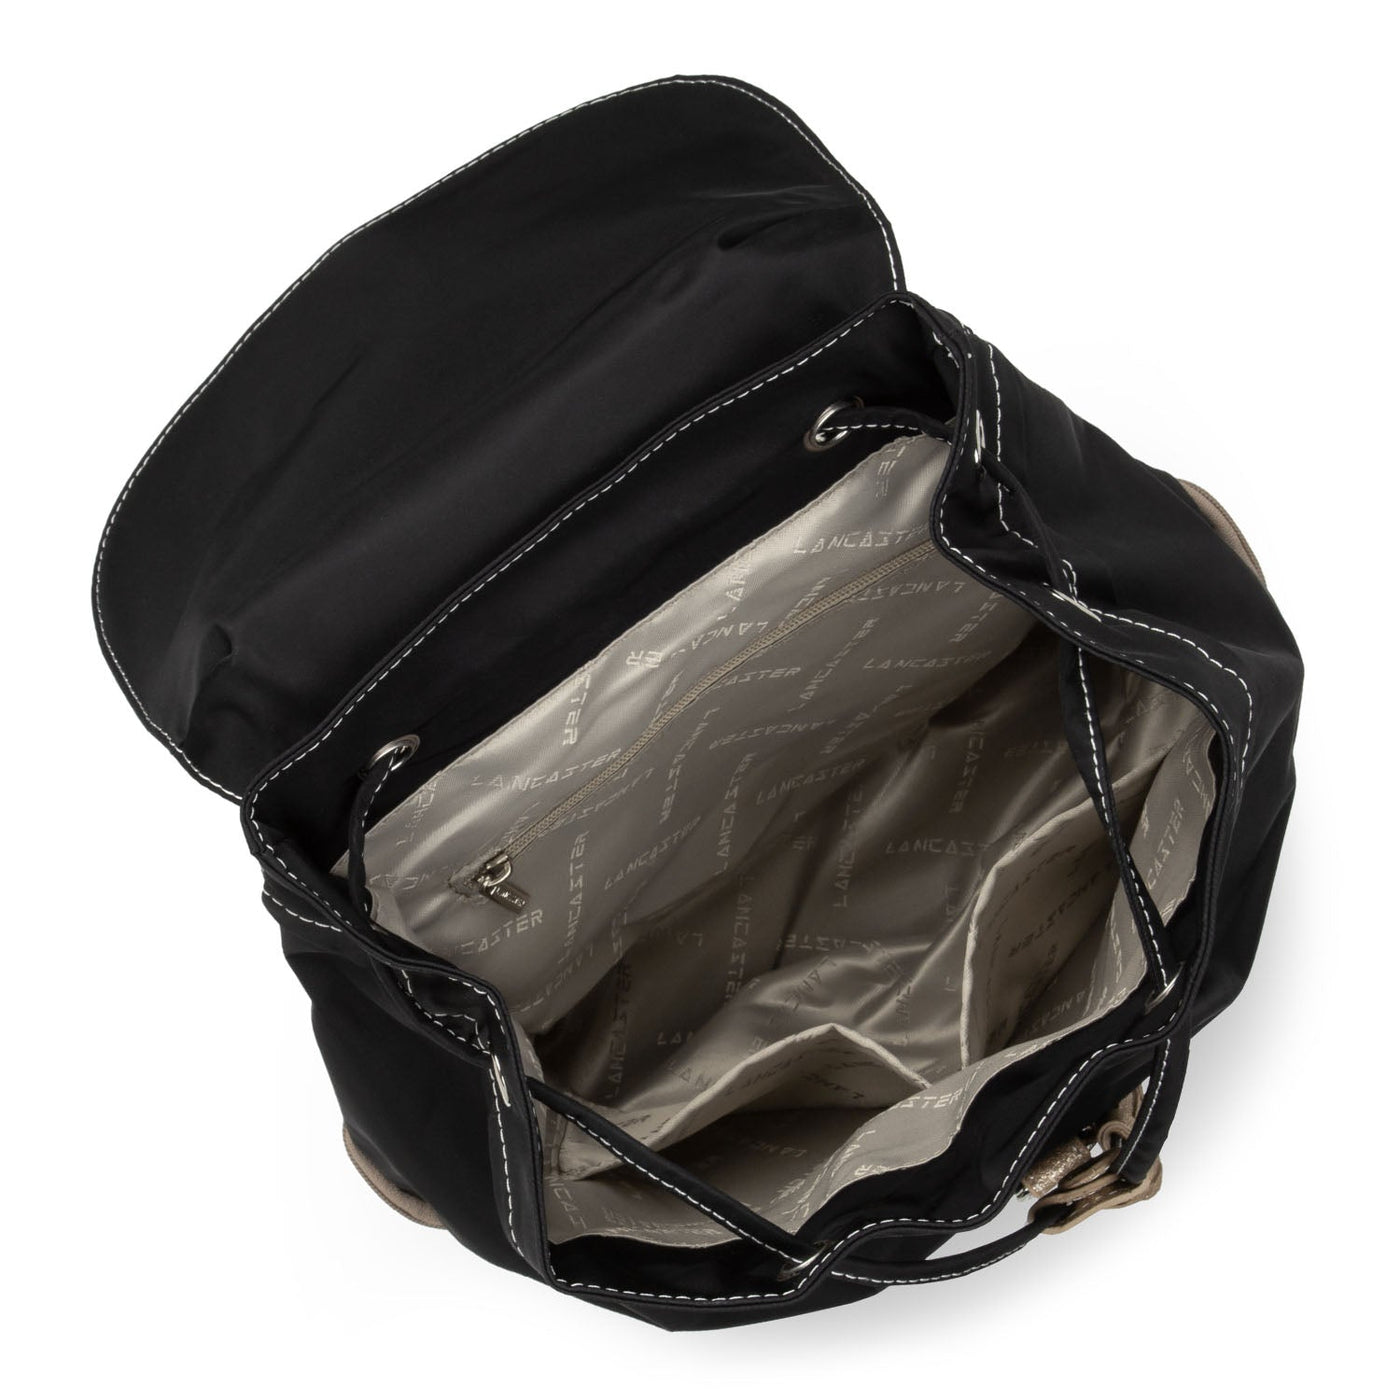 backpack - basic pompon #couleur_noir-galet-champagne